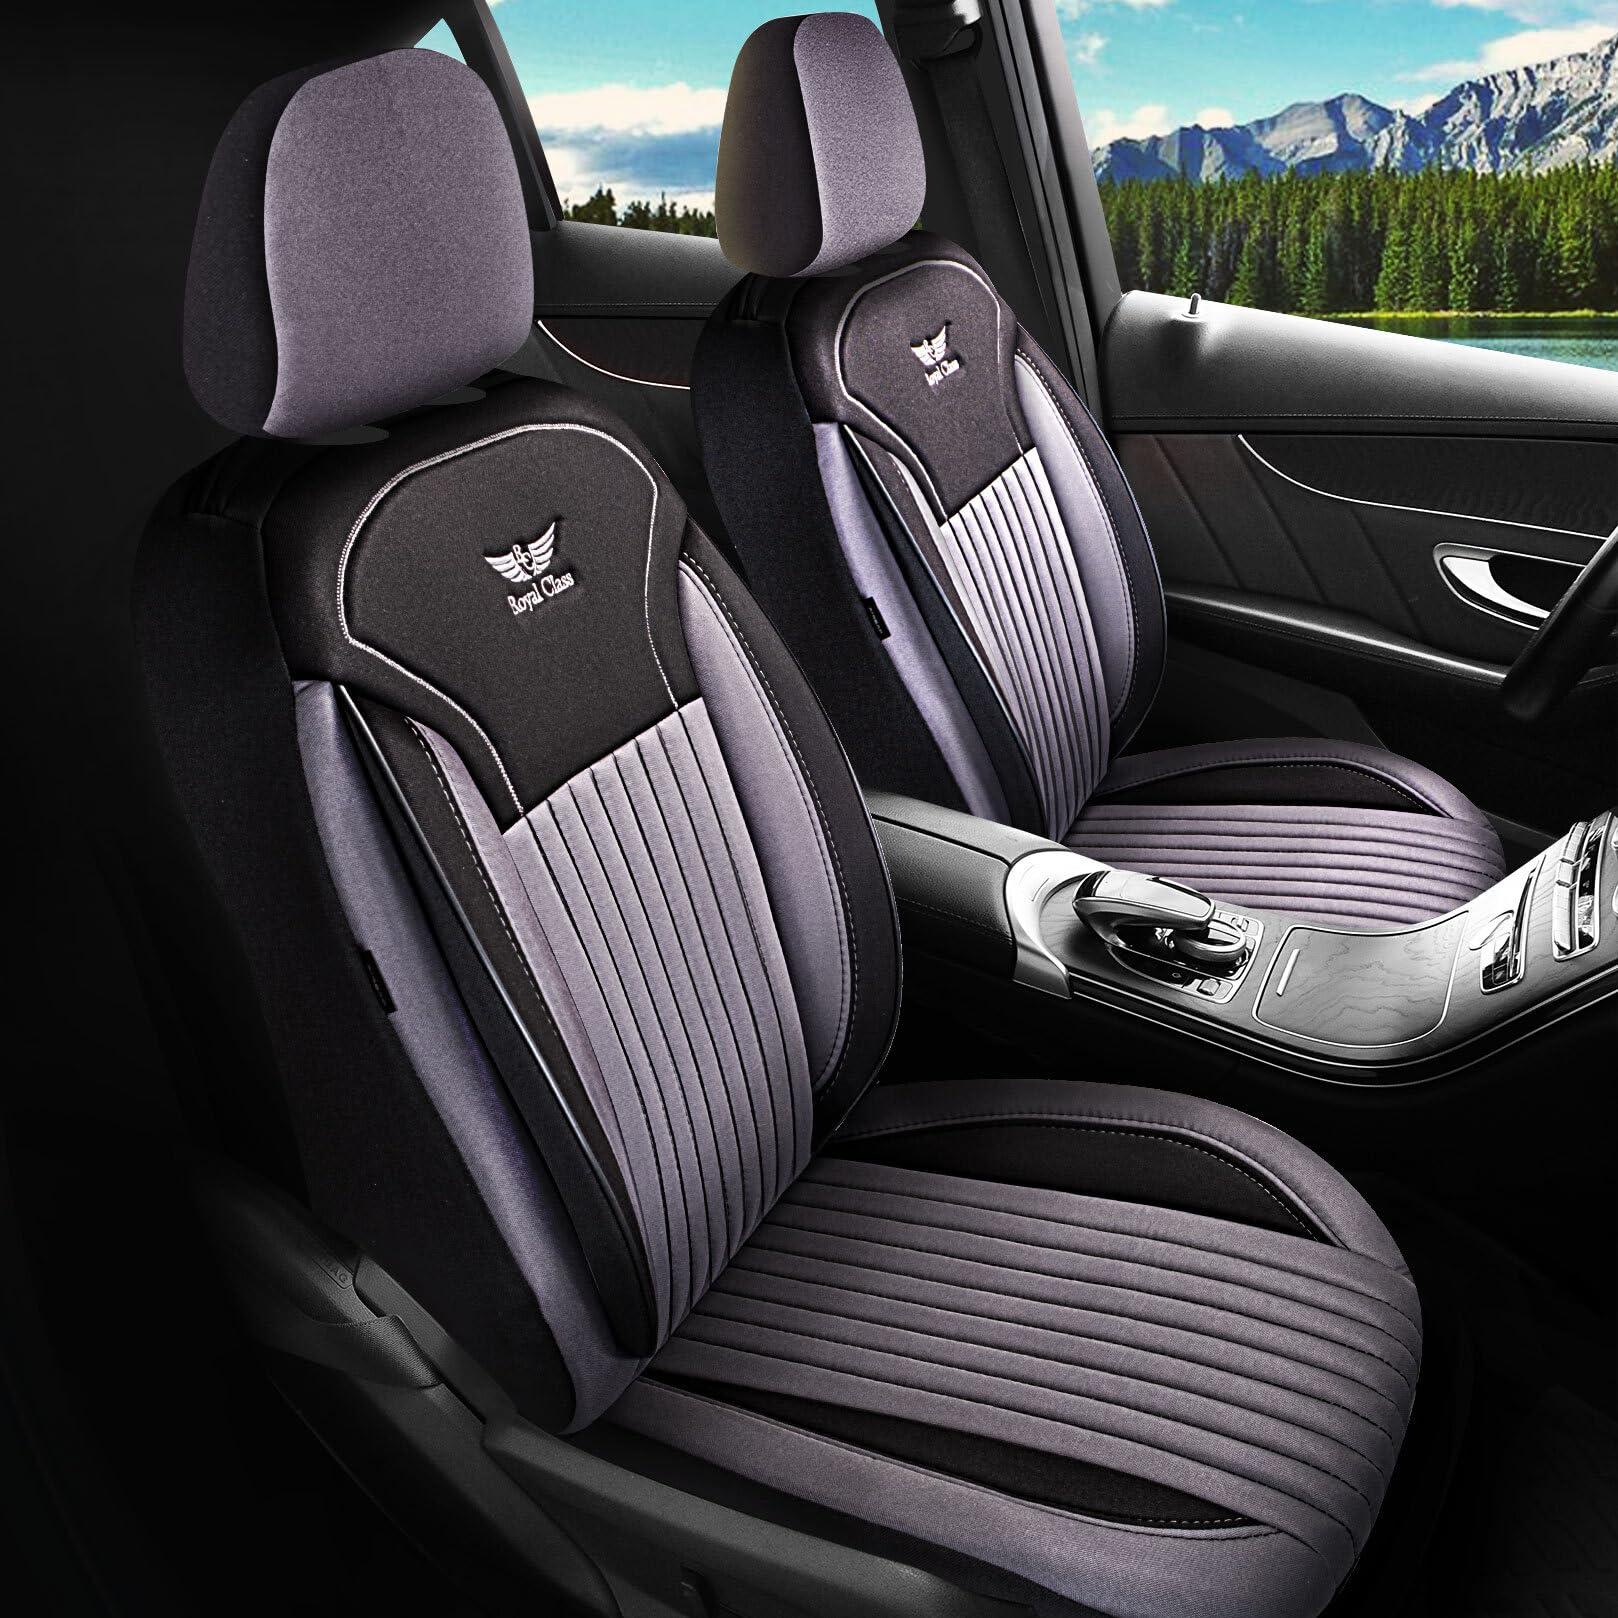 Royal Class Auto Sitzbezüge kompatibel für Volvo V70 in Schwarz Grau Fahrer und Beifahrer, Autositzbezug Schonbezug Sitzbezug Auto Komplettset 2-Sitze Jakar Stoff von RC Royal Class